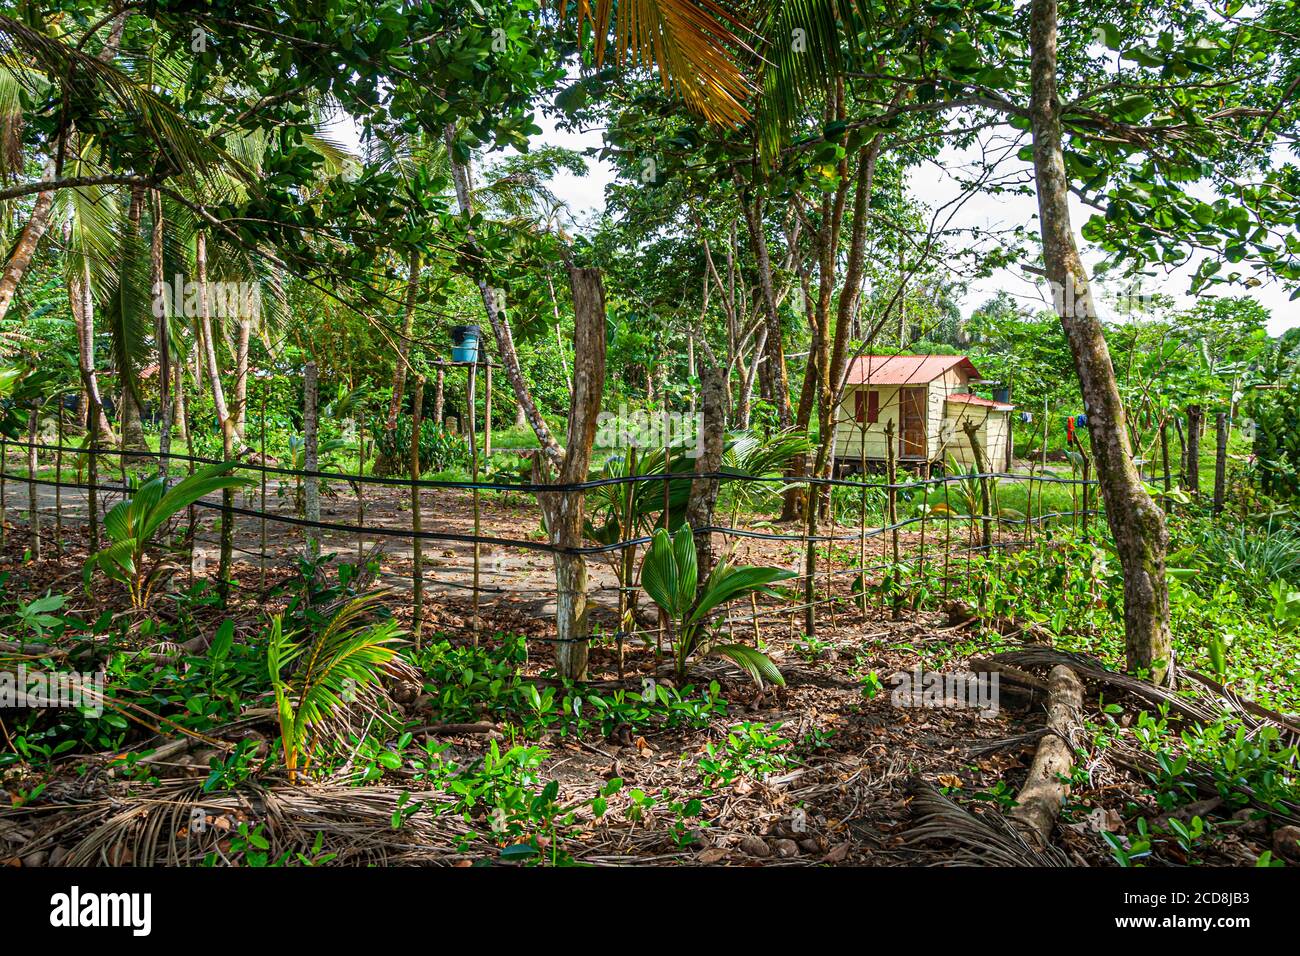 Farm in rural Costa Rica Stock Photo